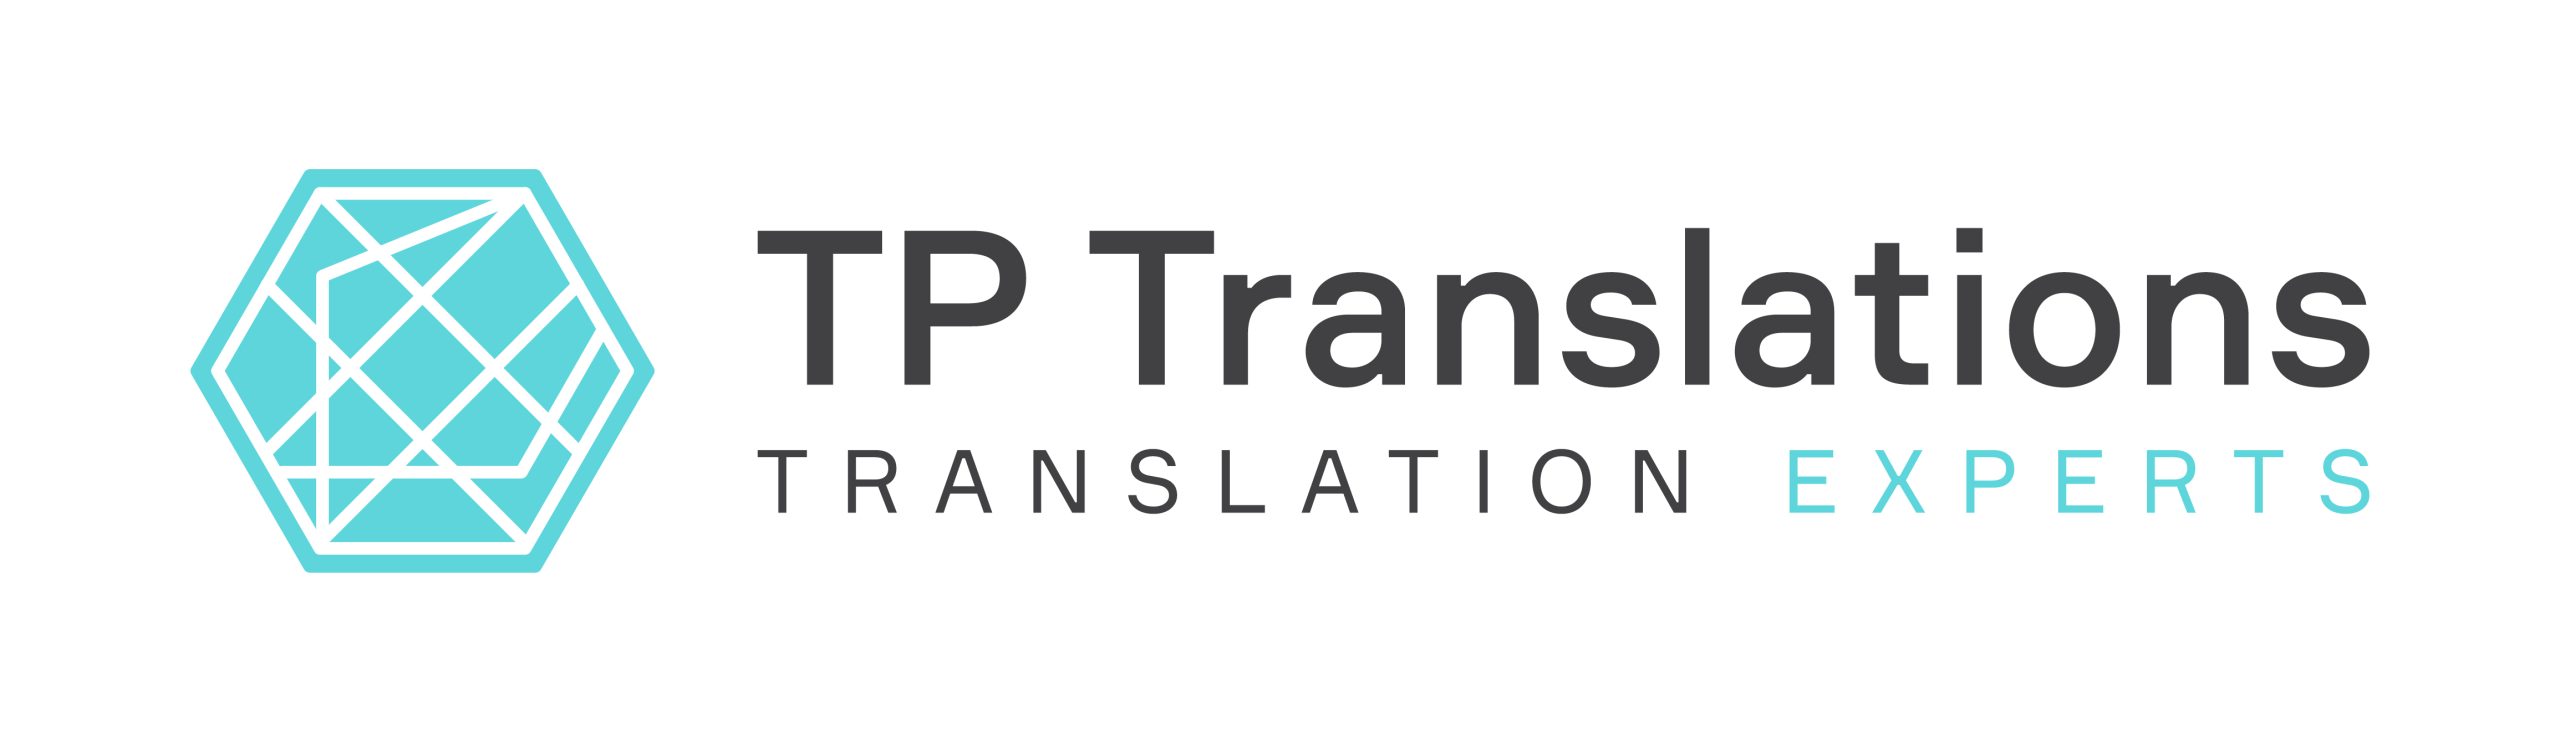 TP Translations